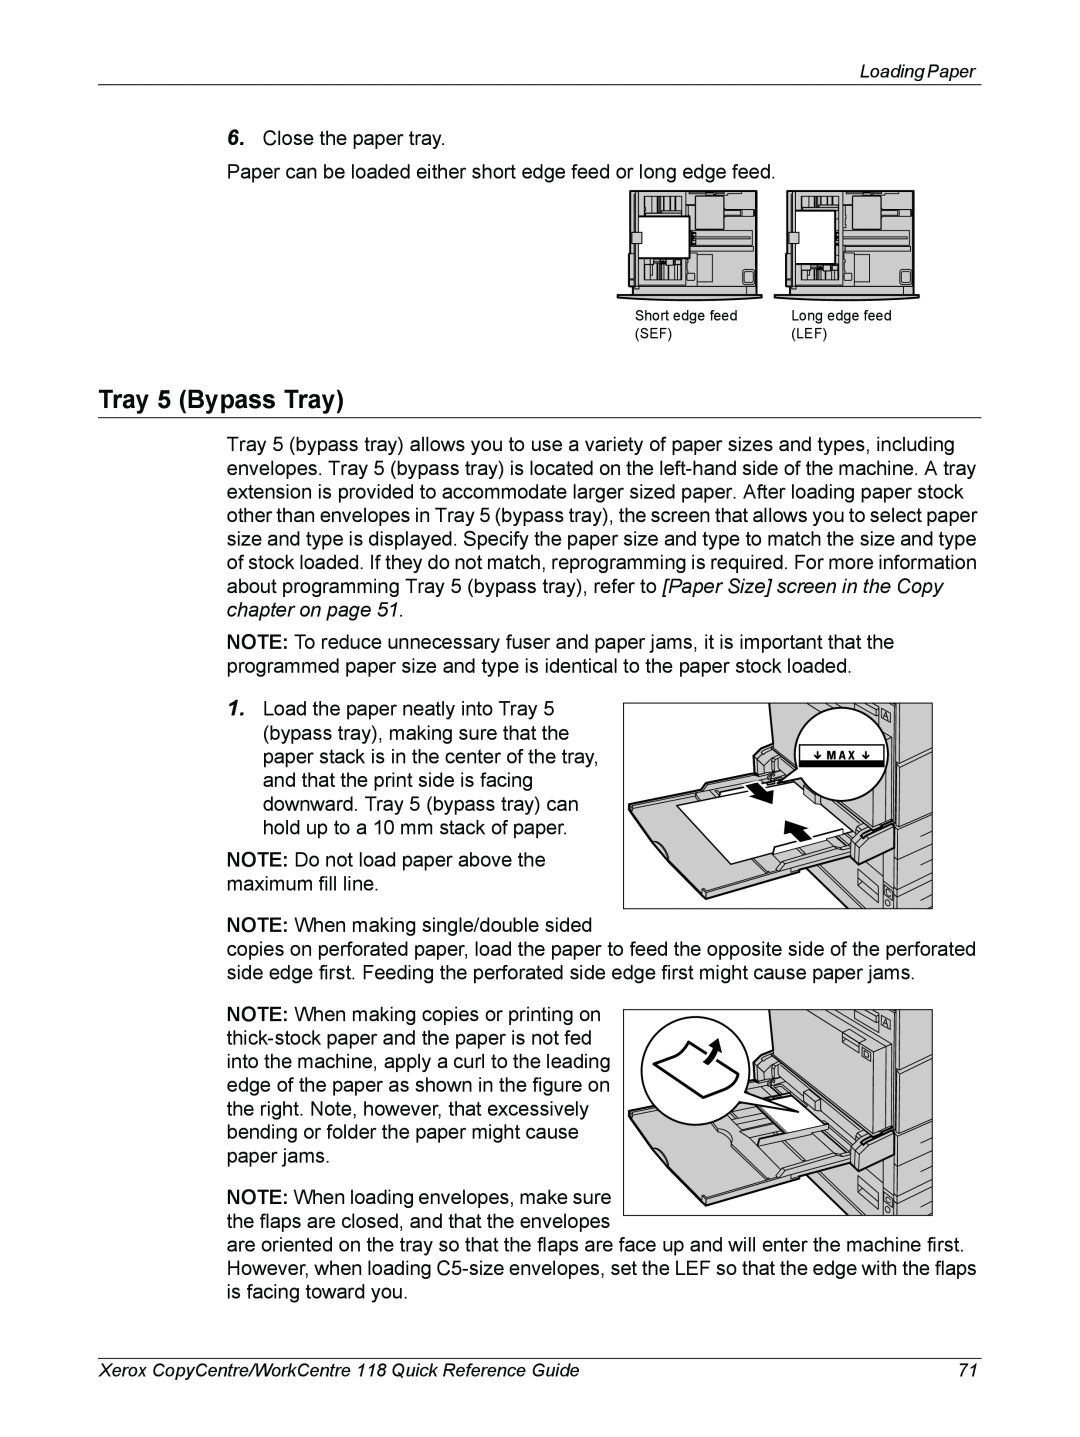 Xerox M118i, C118 manual Tray 5 Bypass Tray, Short edge feed 